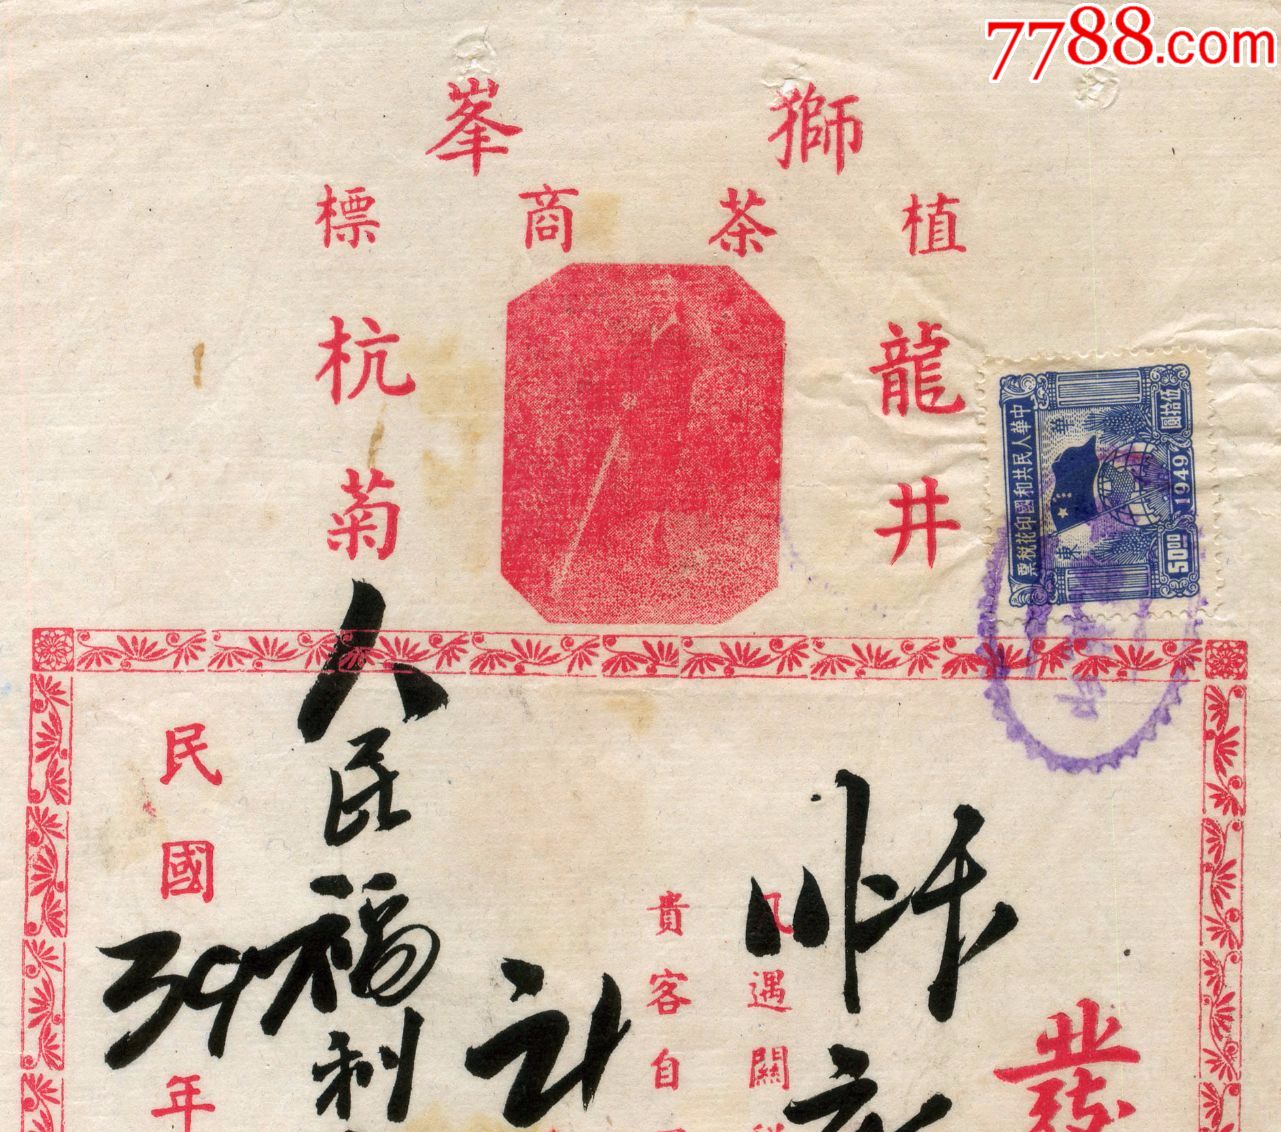 1950年4月仍使用民国纪年的杭州天一茶号